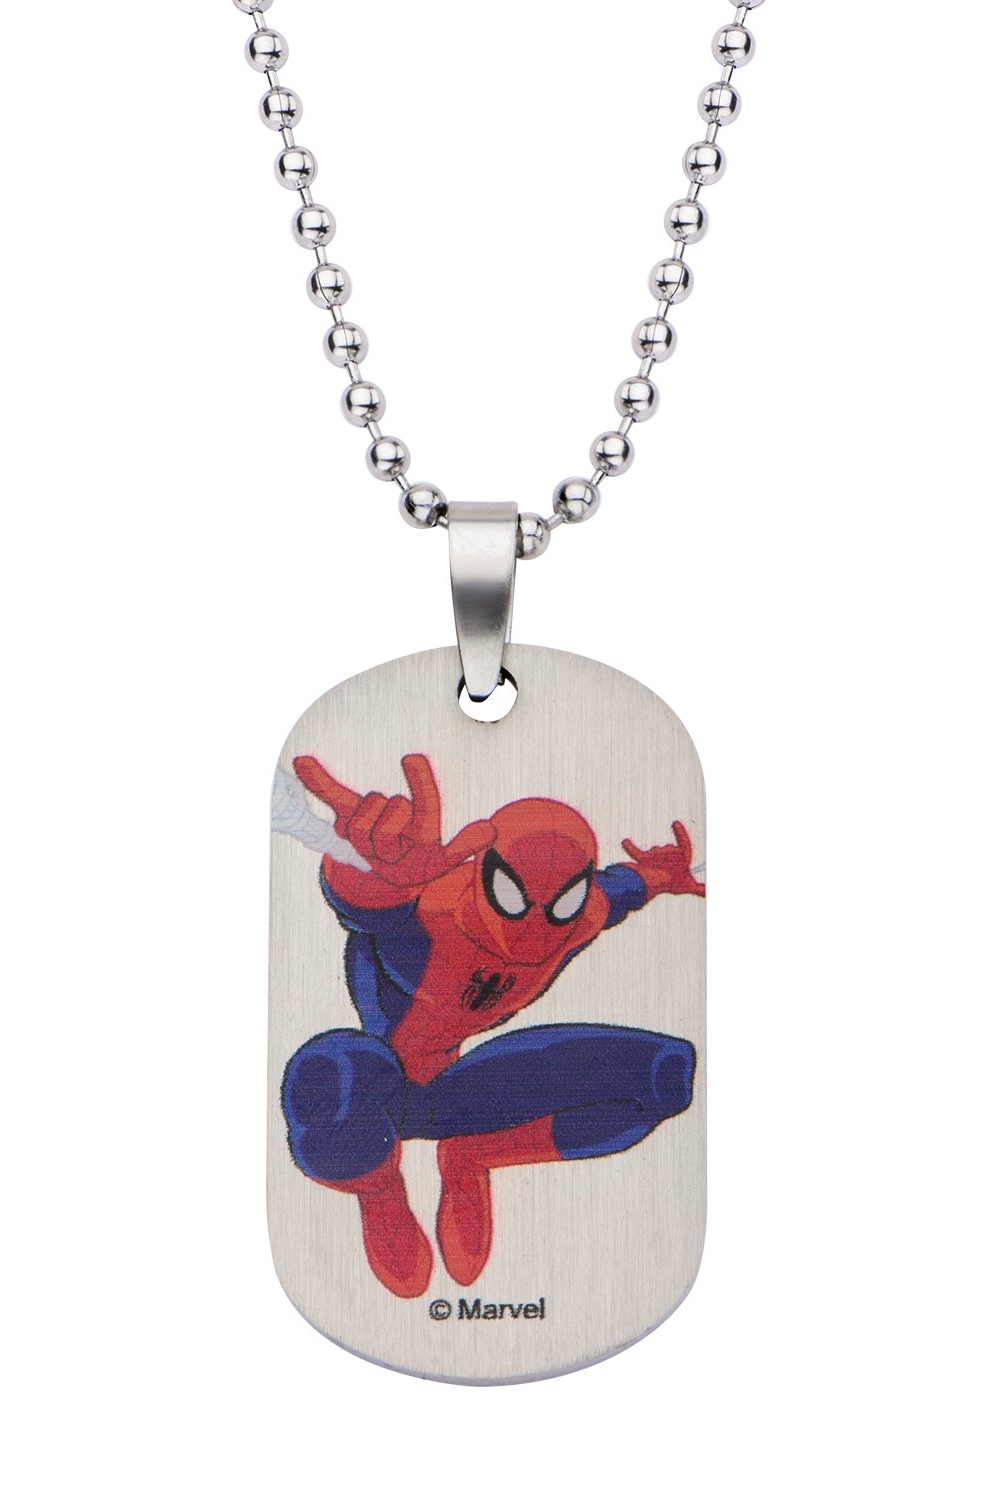 Marvel Ultimate Spider-Man - Spider-Man Dog Tag